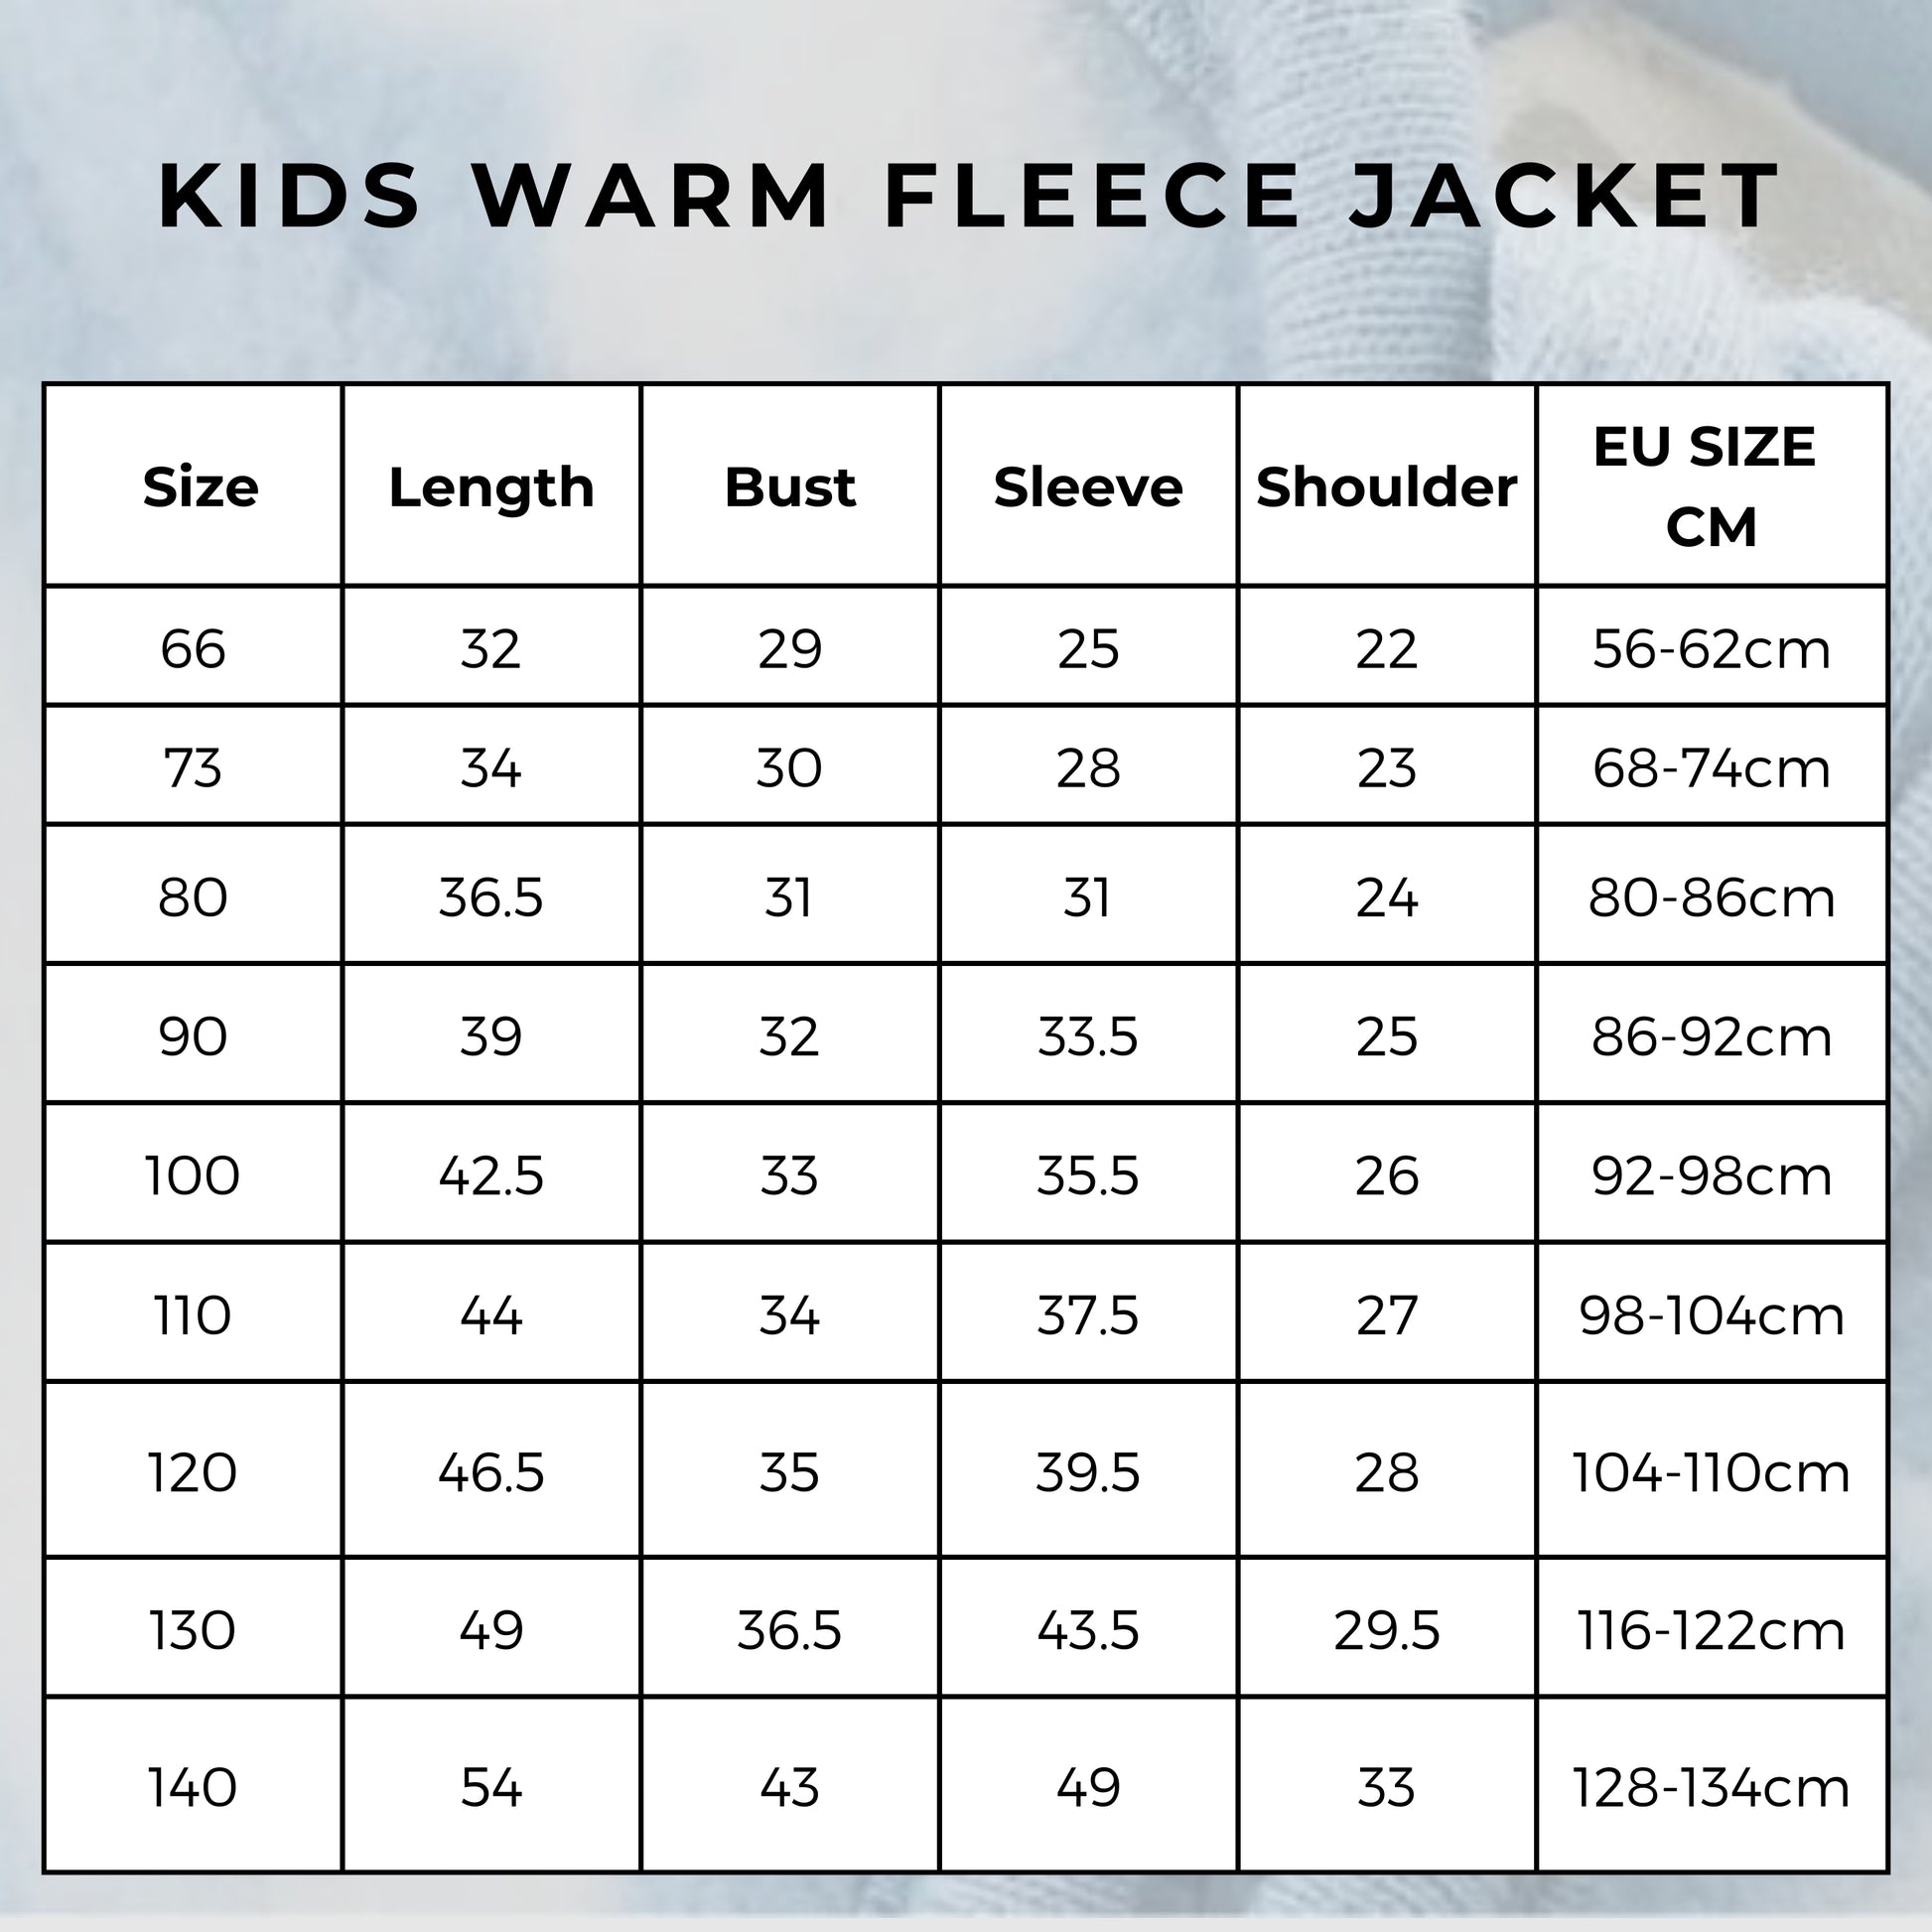 Kids Warm Fleece Jacket size